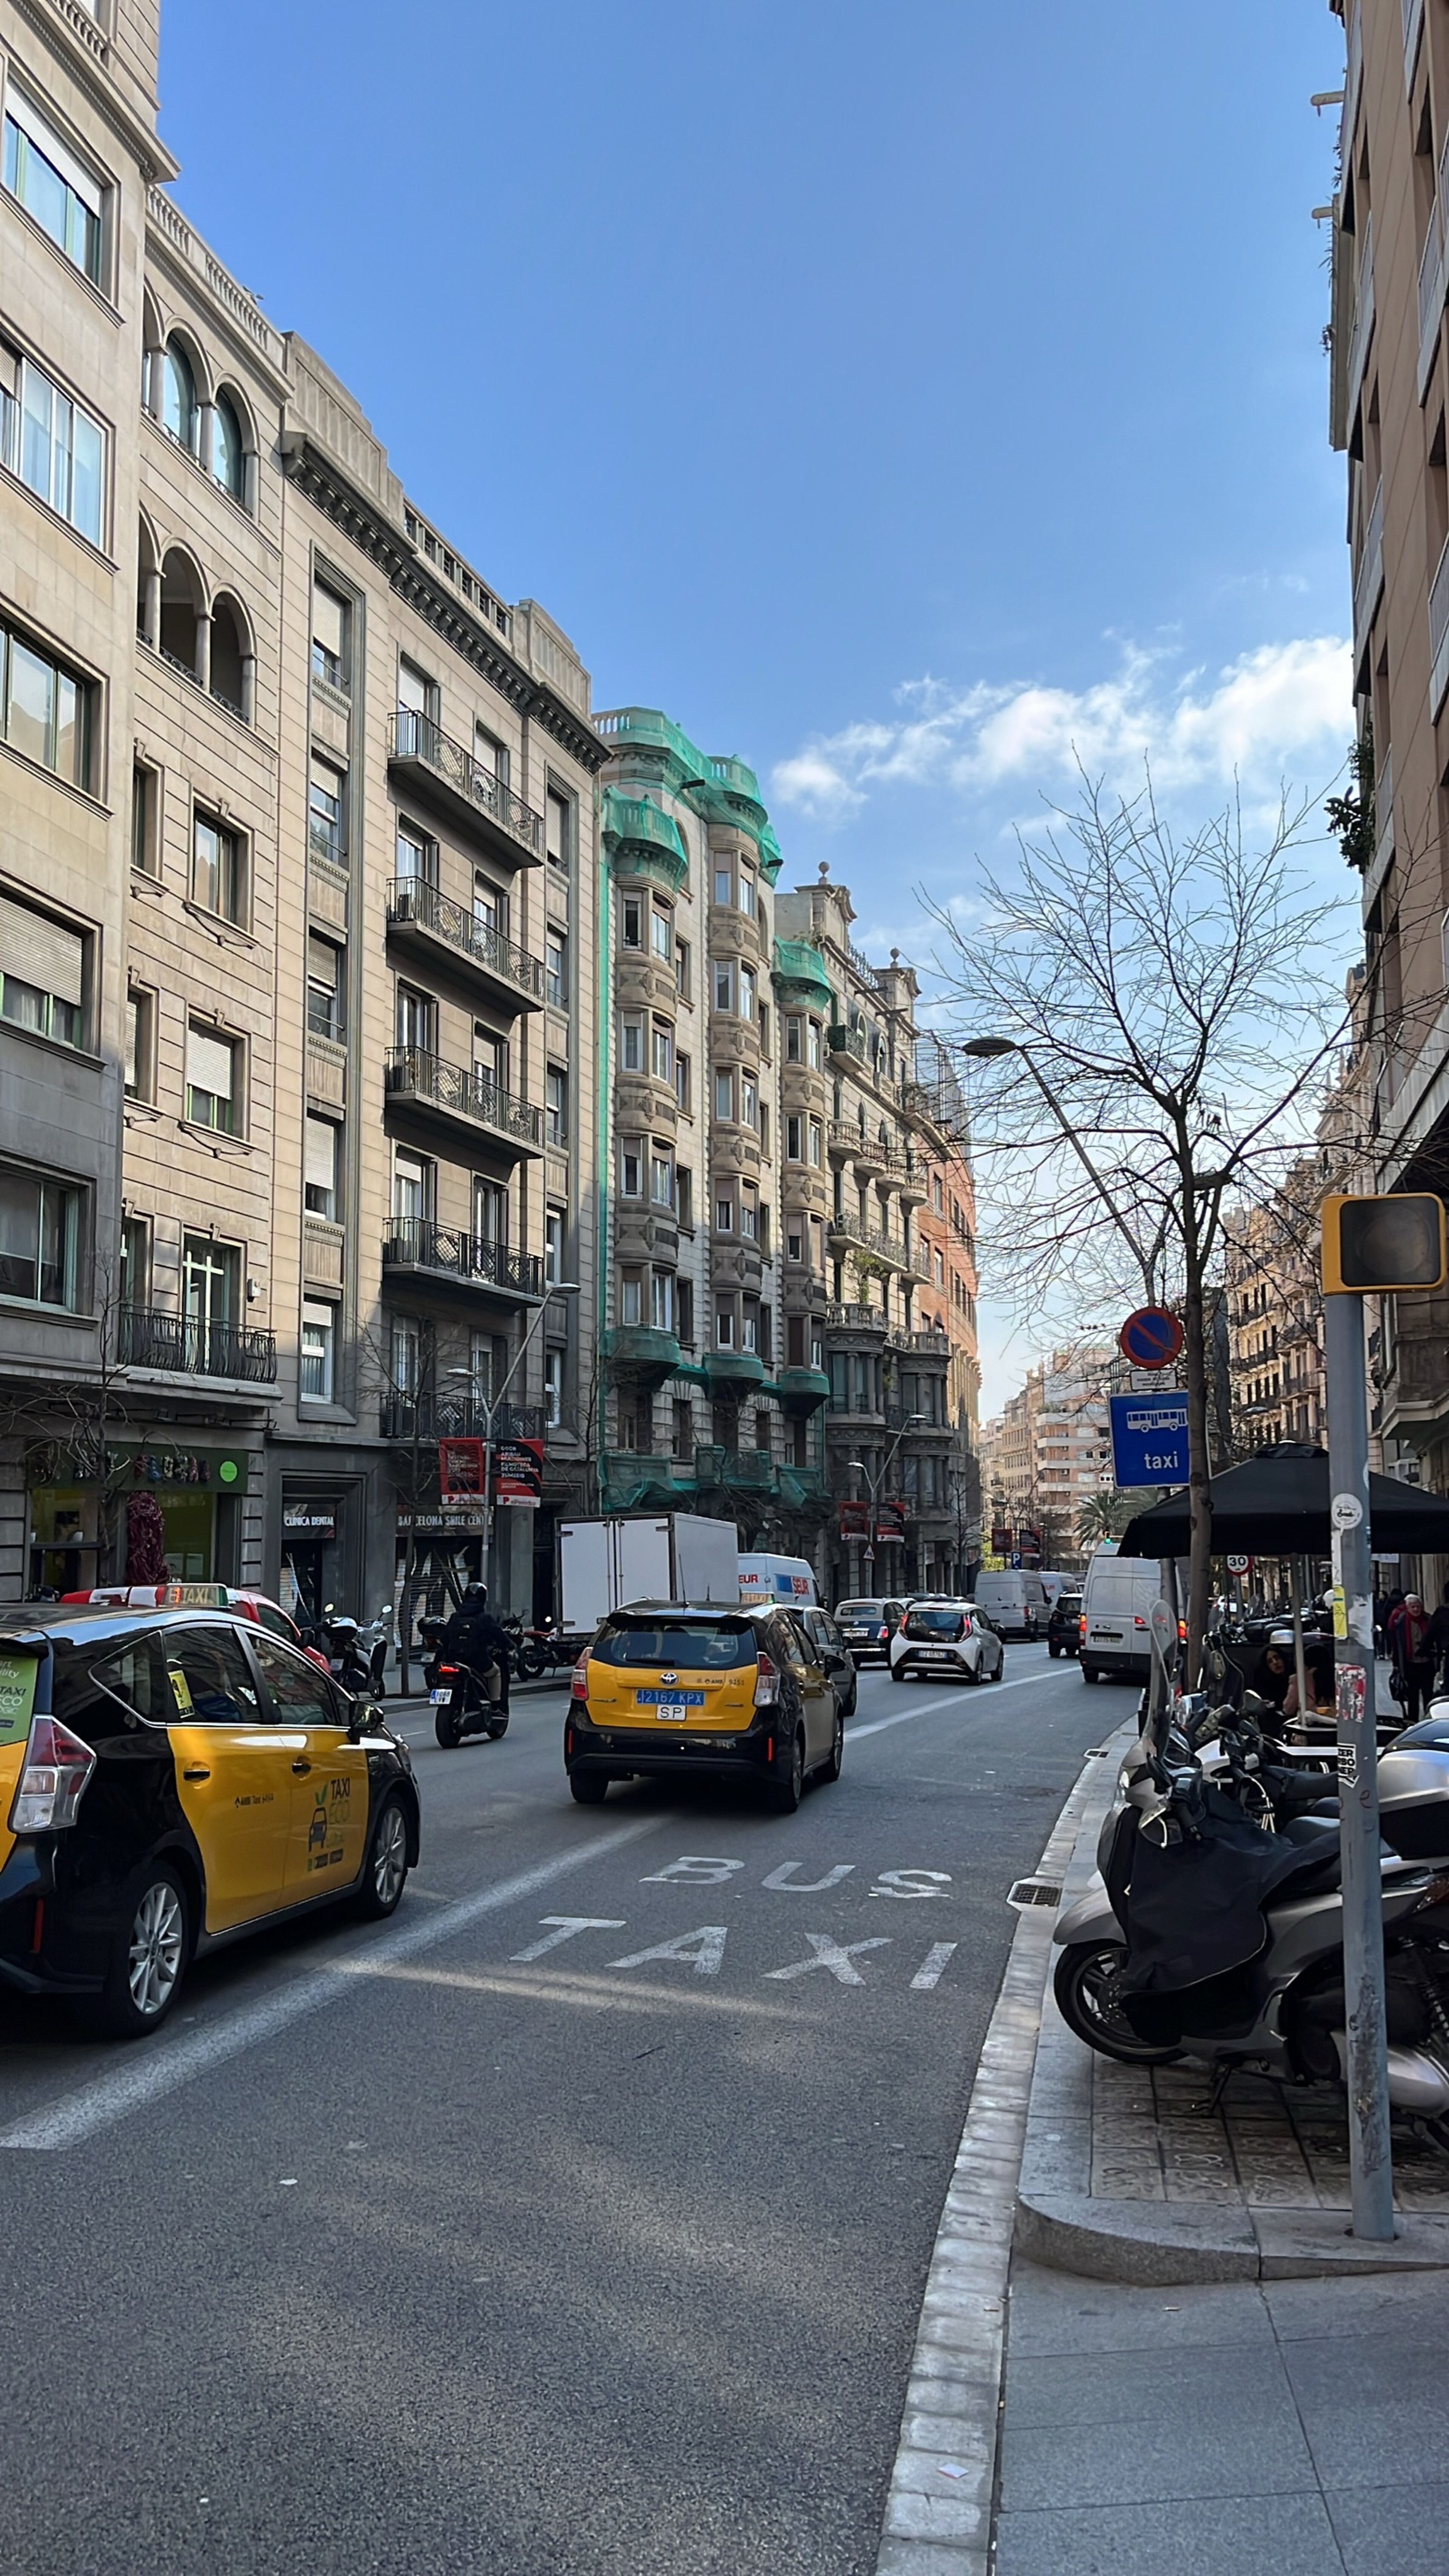 Una calle de la ciudad con edificios de estilo europeo con cúpulas verdes, tráfico activo con taxis amarillos distintivos y un cielo azul brillante encima.